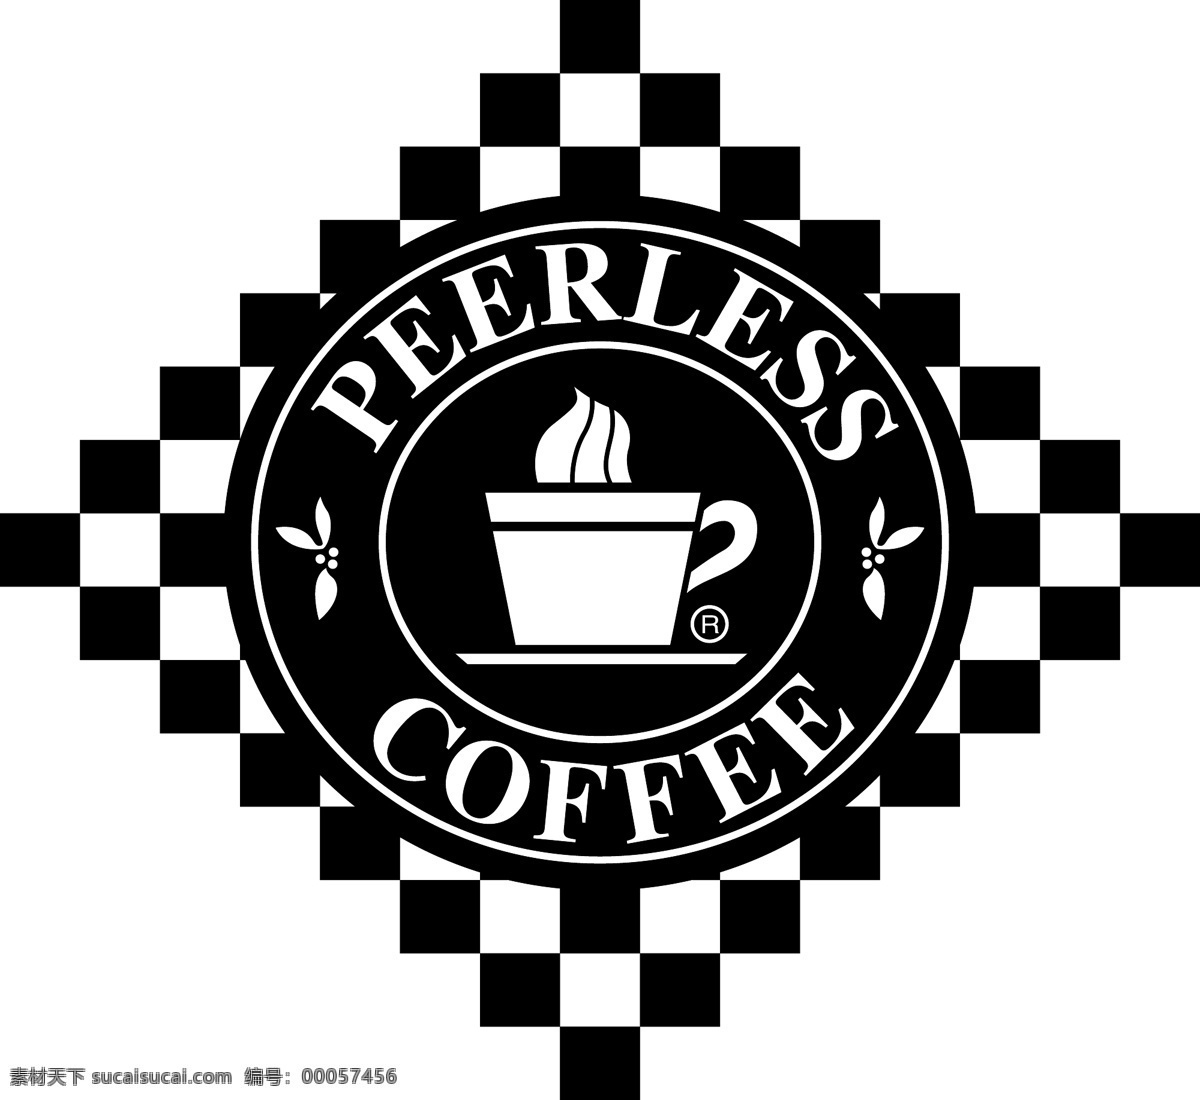 无与伦比 咖啡 标识 公司 免费 品牌 品牌标识 商标 矢量标志下载 免费矢量标识 矢量 psd源文件 logo设计